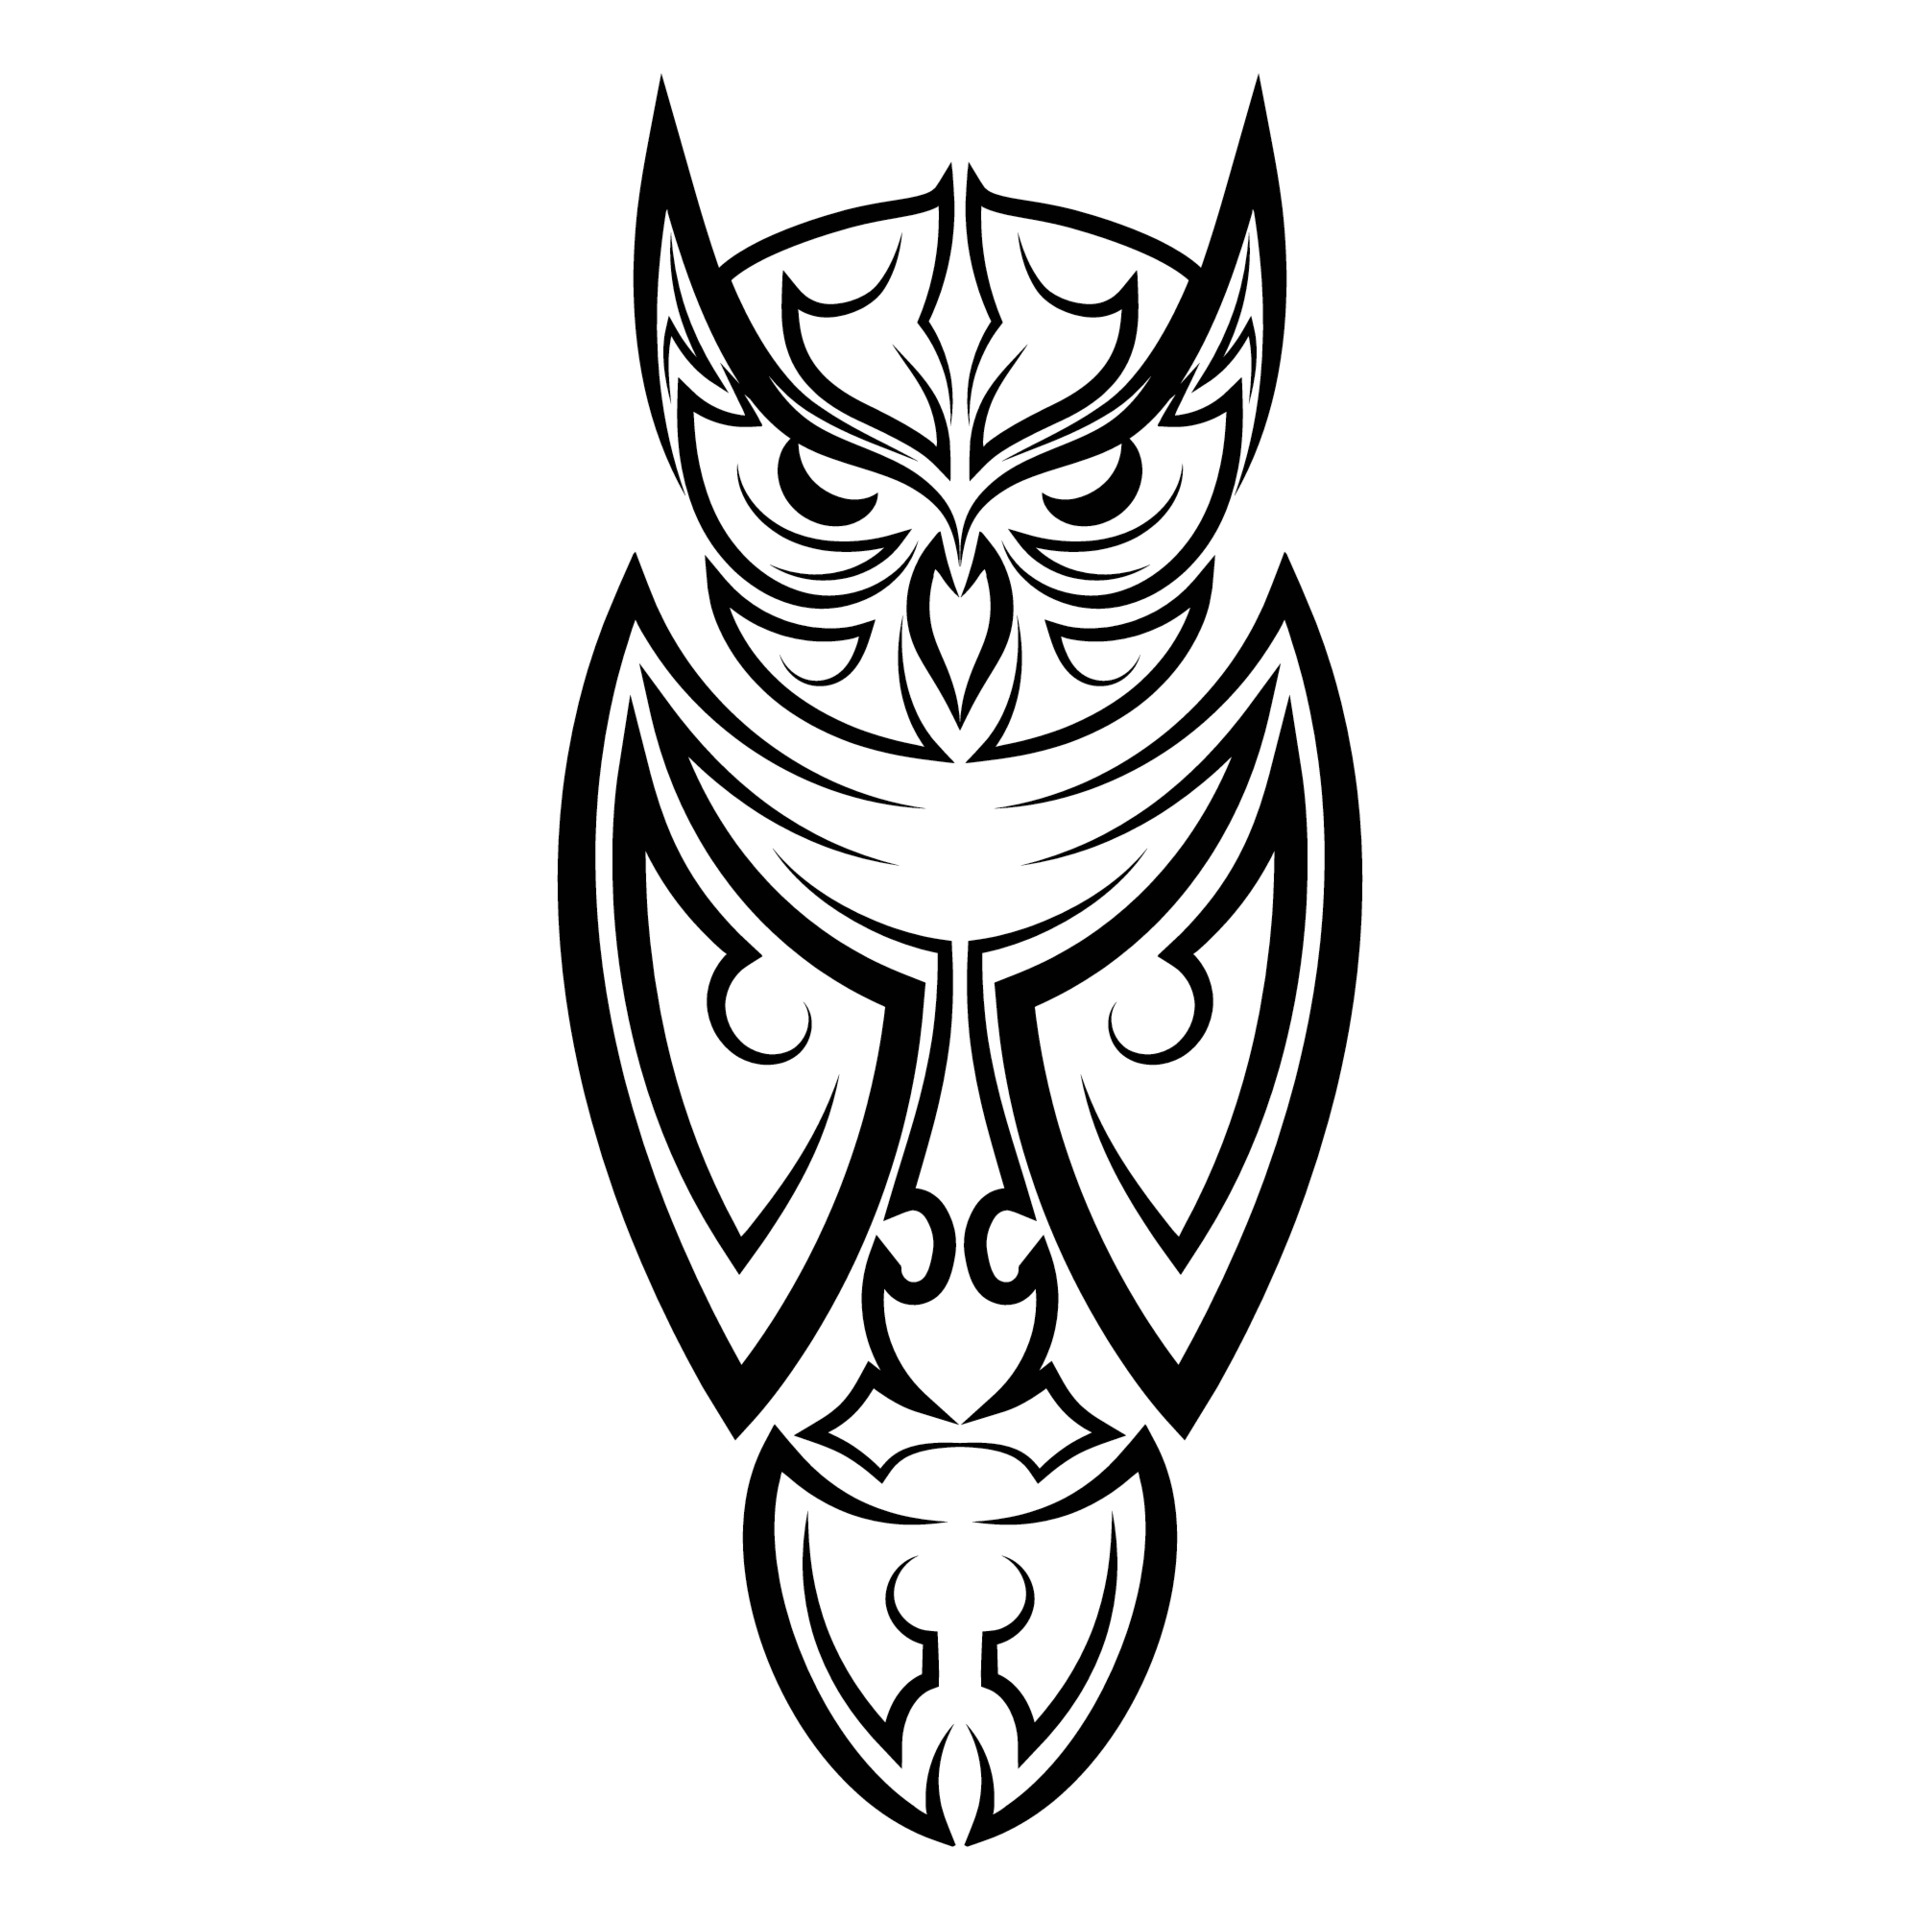 15 Striking Owl Tattoo Designs to Inspire Wisdom